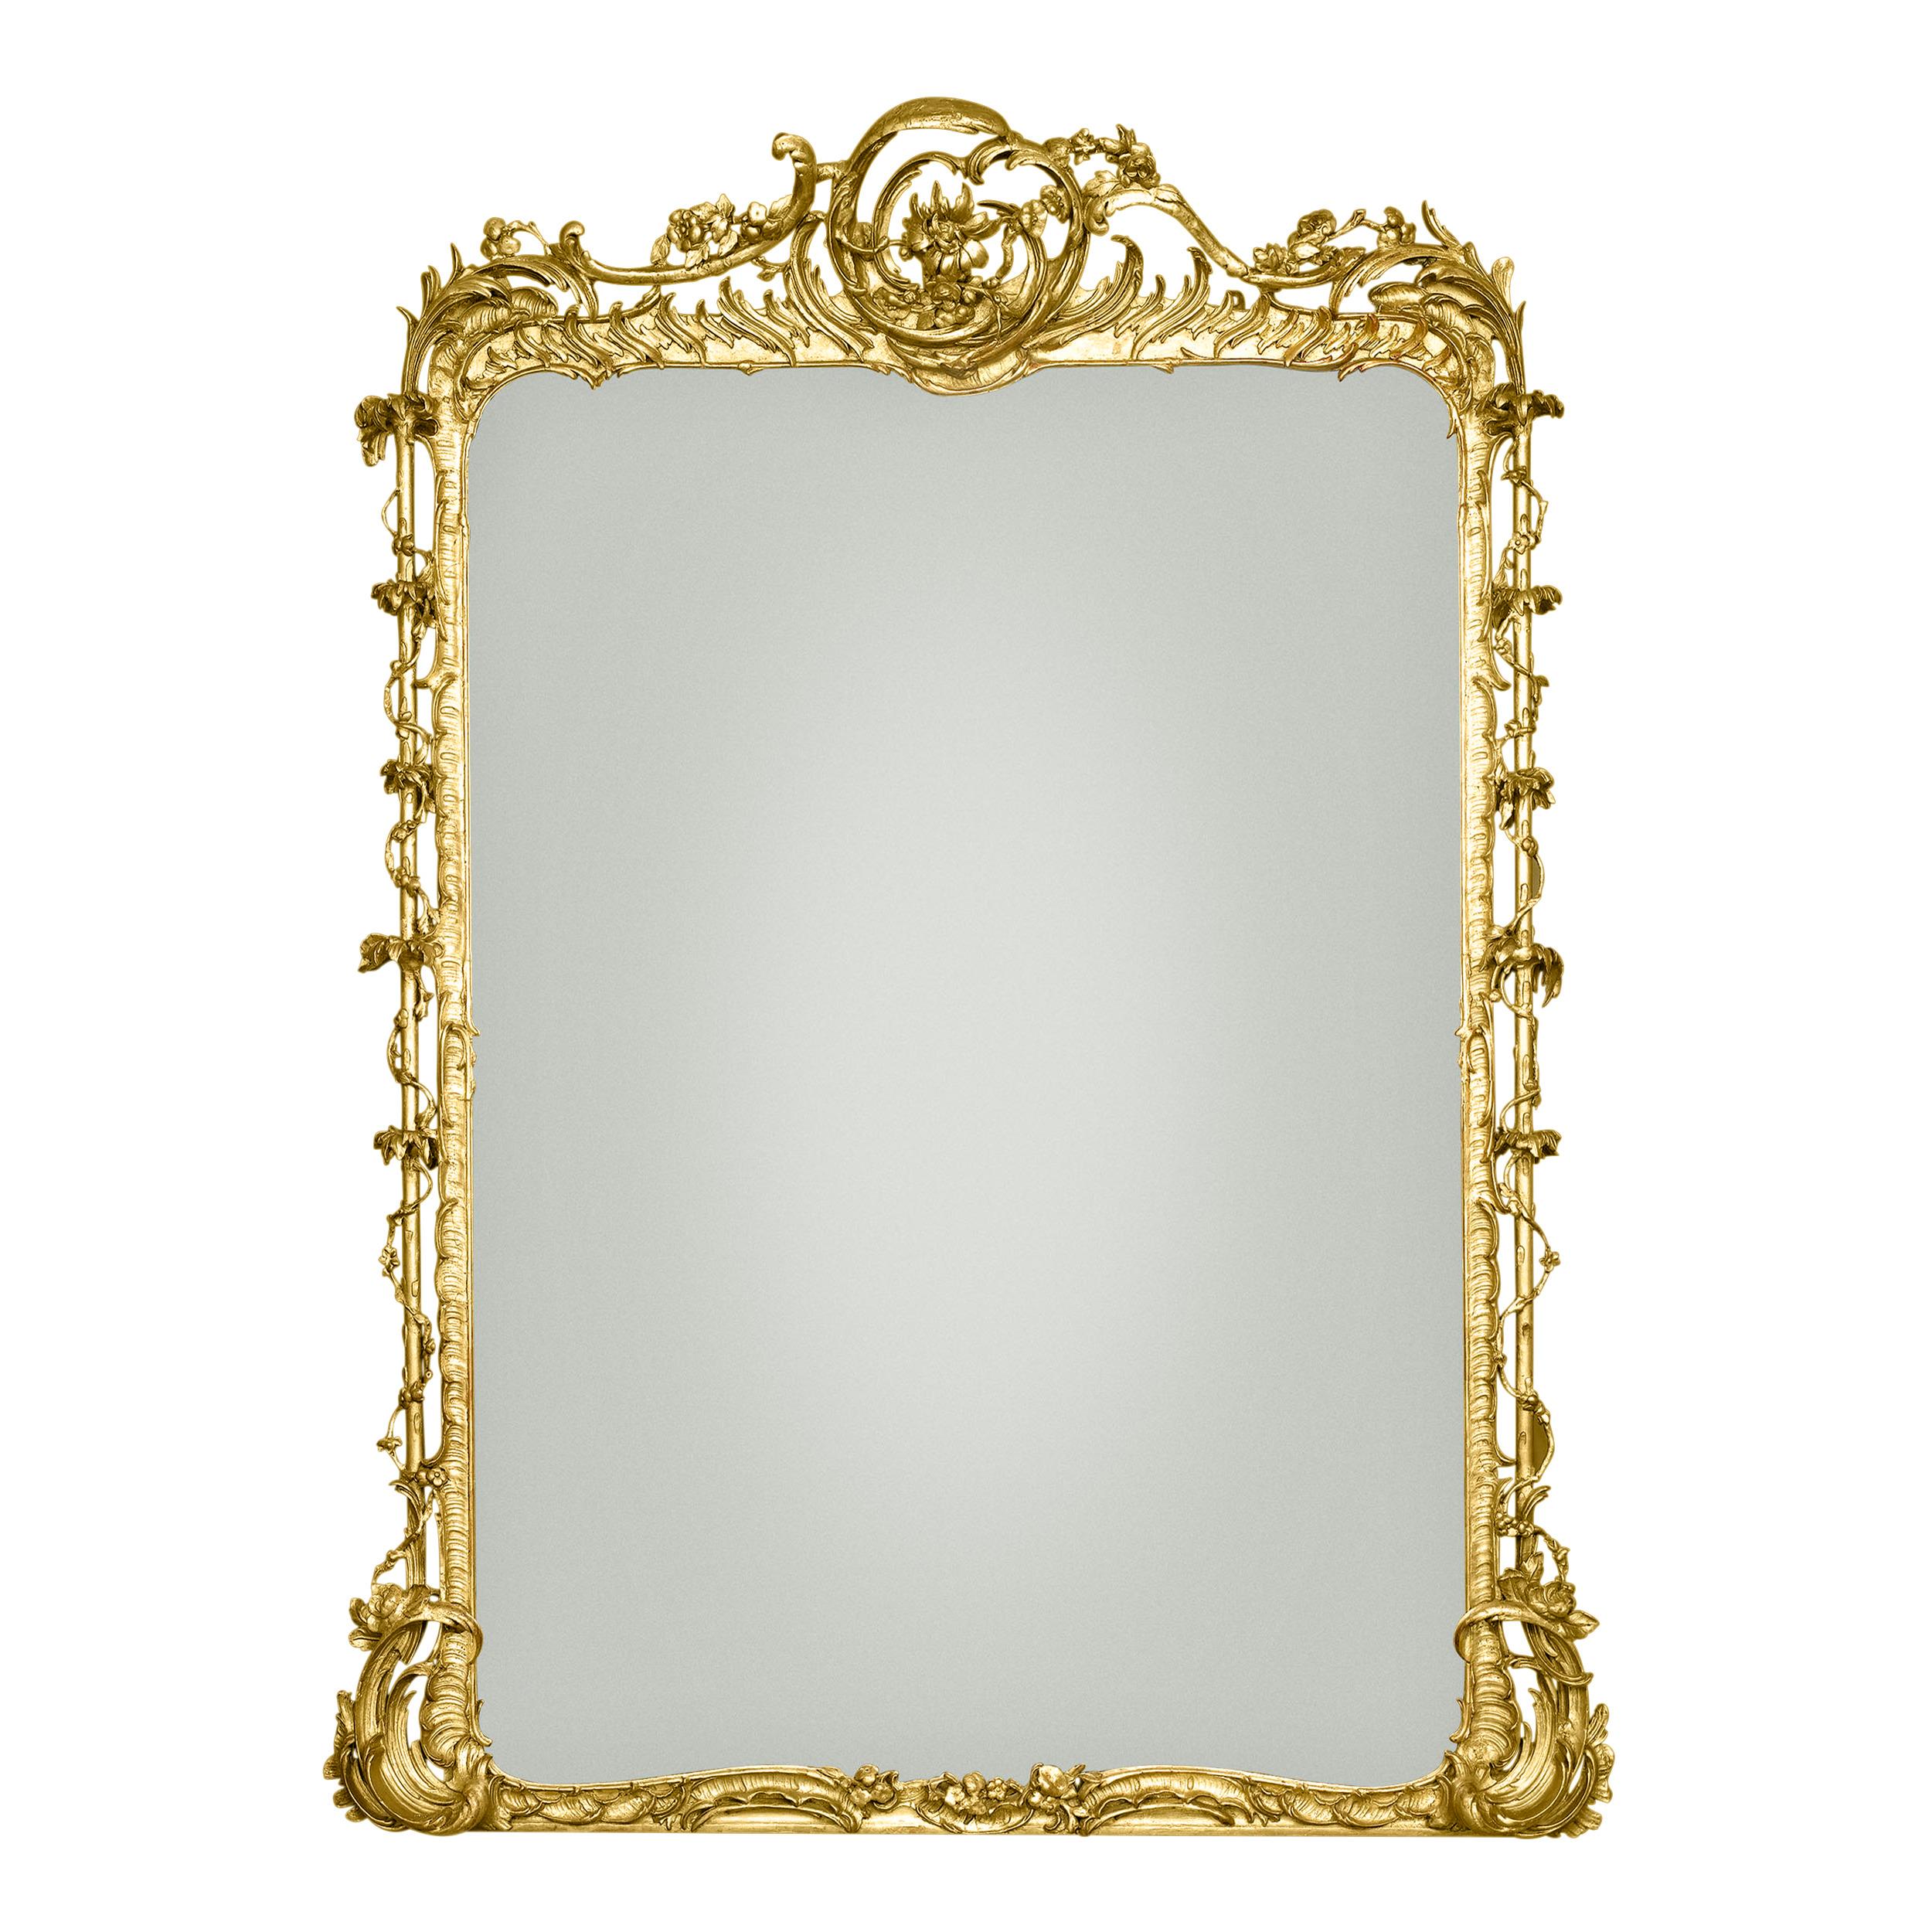 North American Rococo Revival Gilt Gesso Mirror